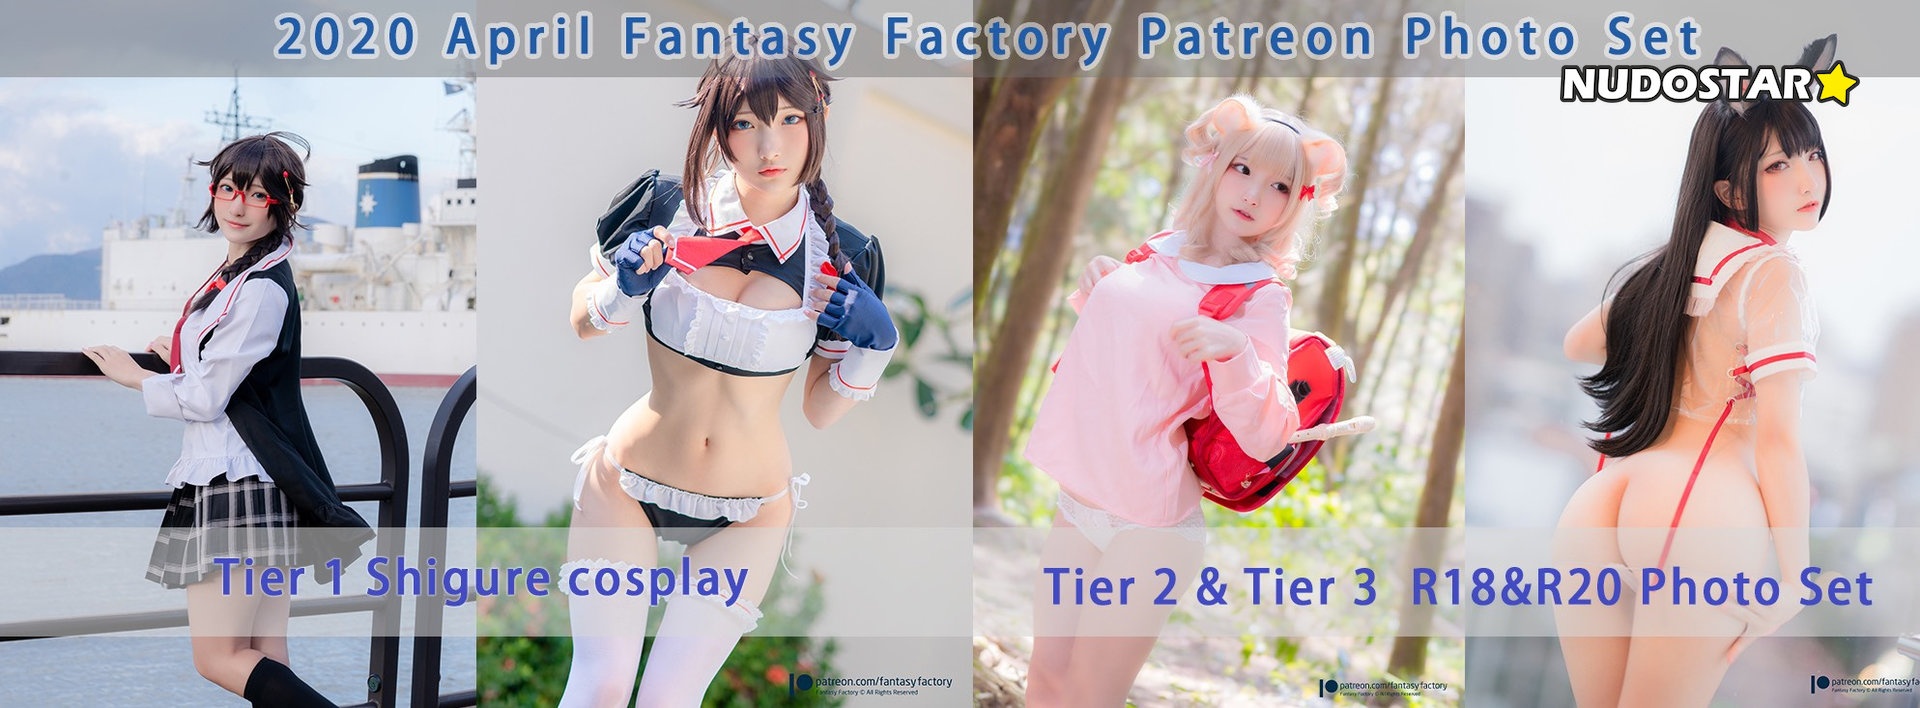 Fantasy Factory – fantasyfactory Patreon Sexy Leaks (25 Photos)